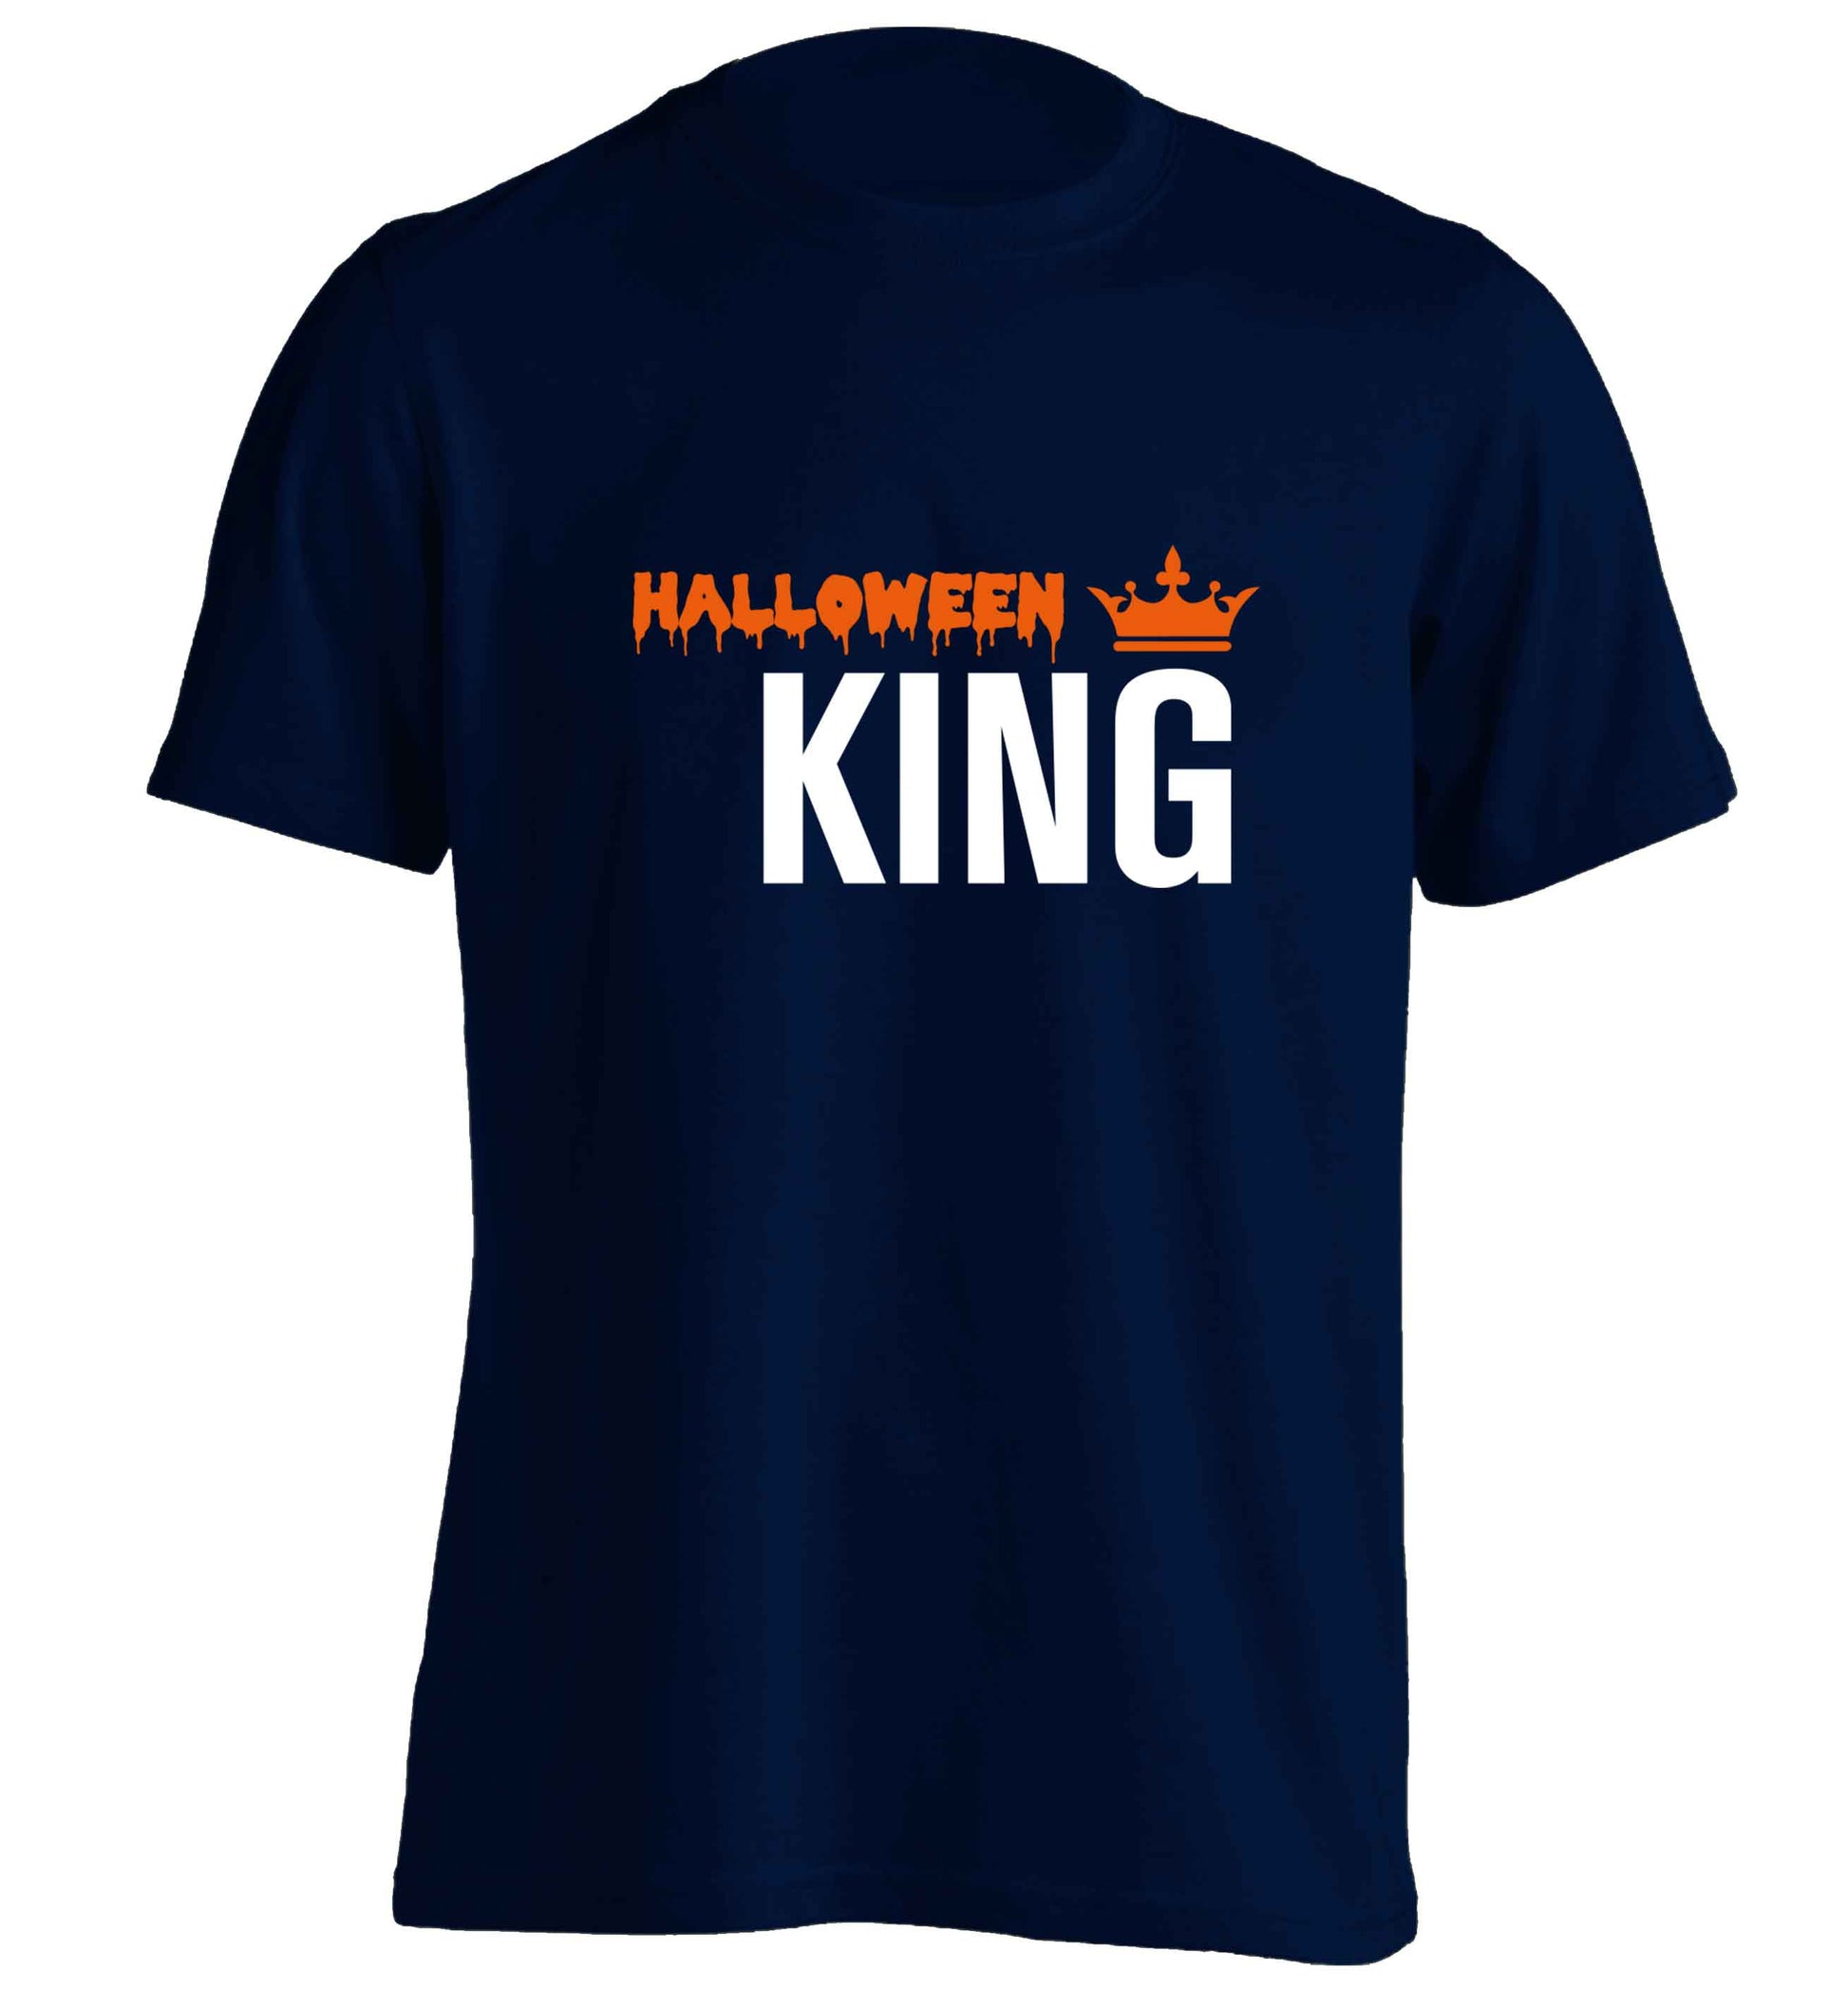 Halloween king adults unisex navy Tshirt 2XL